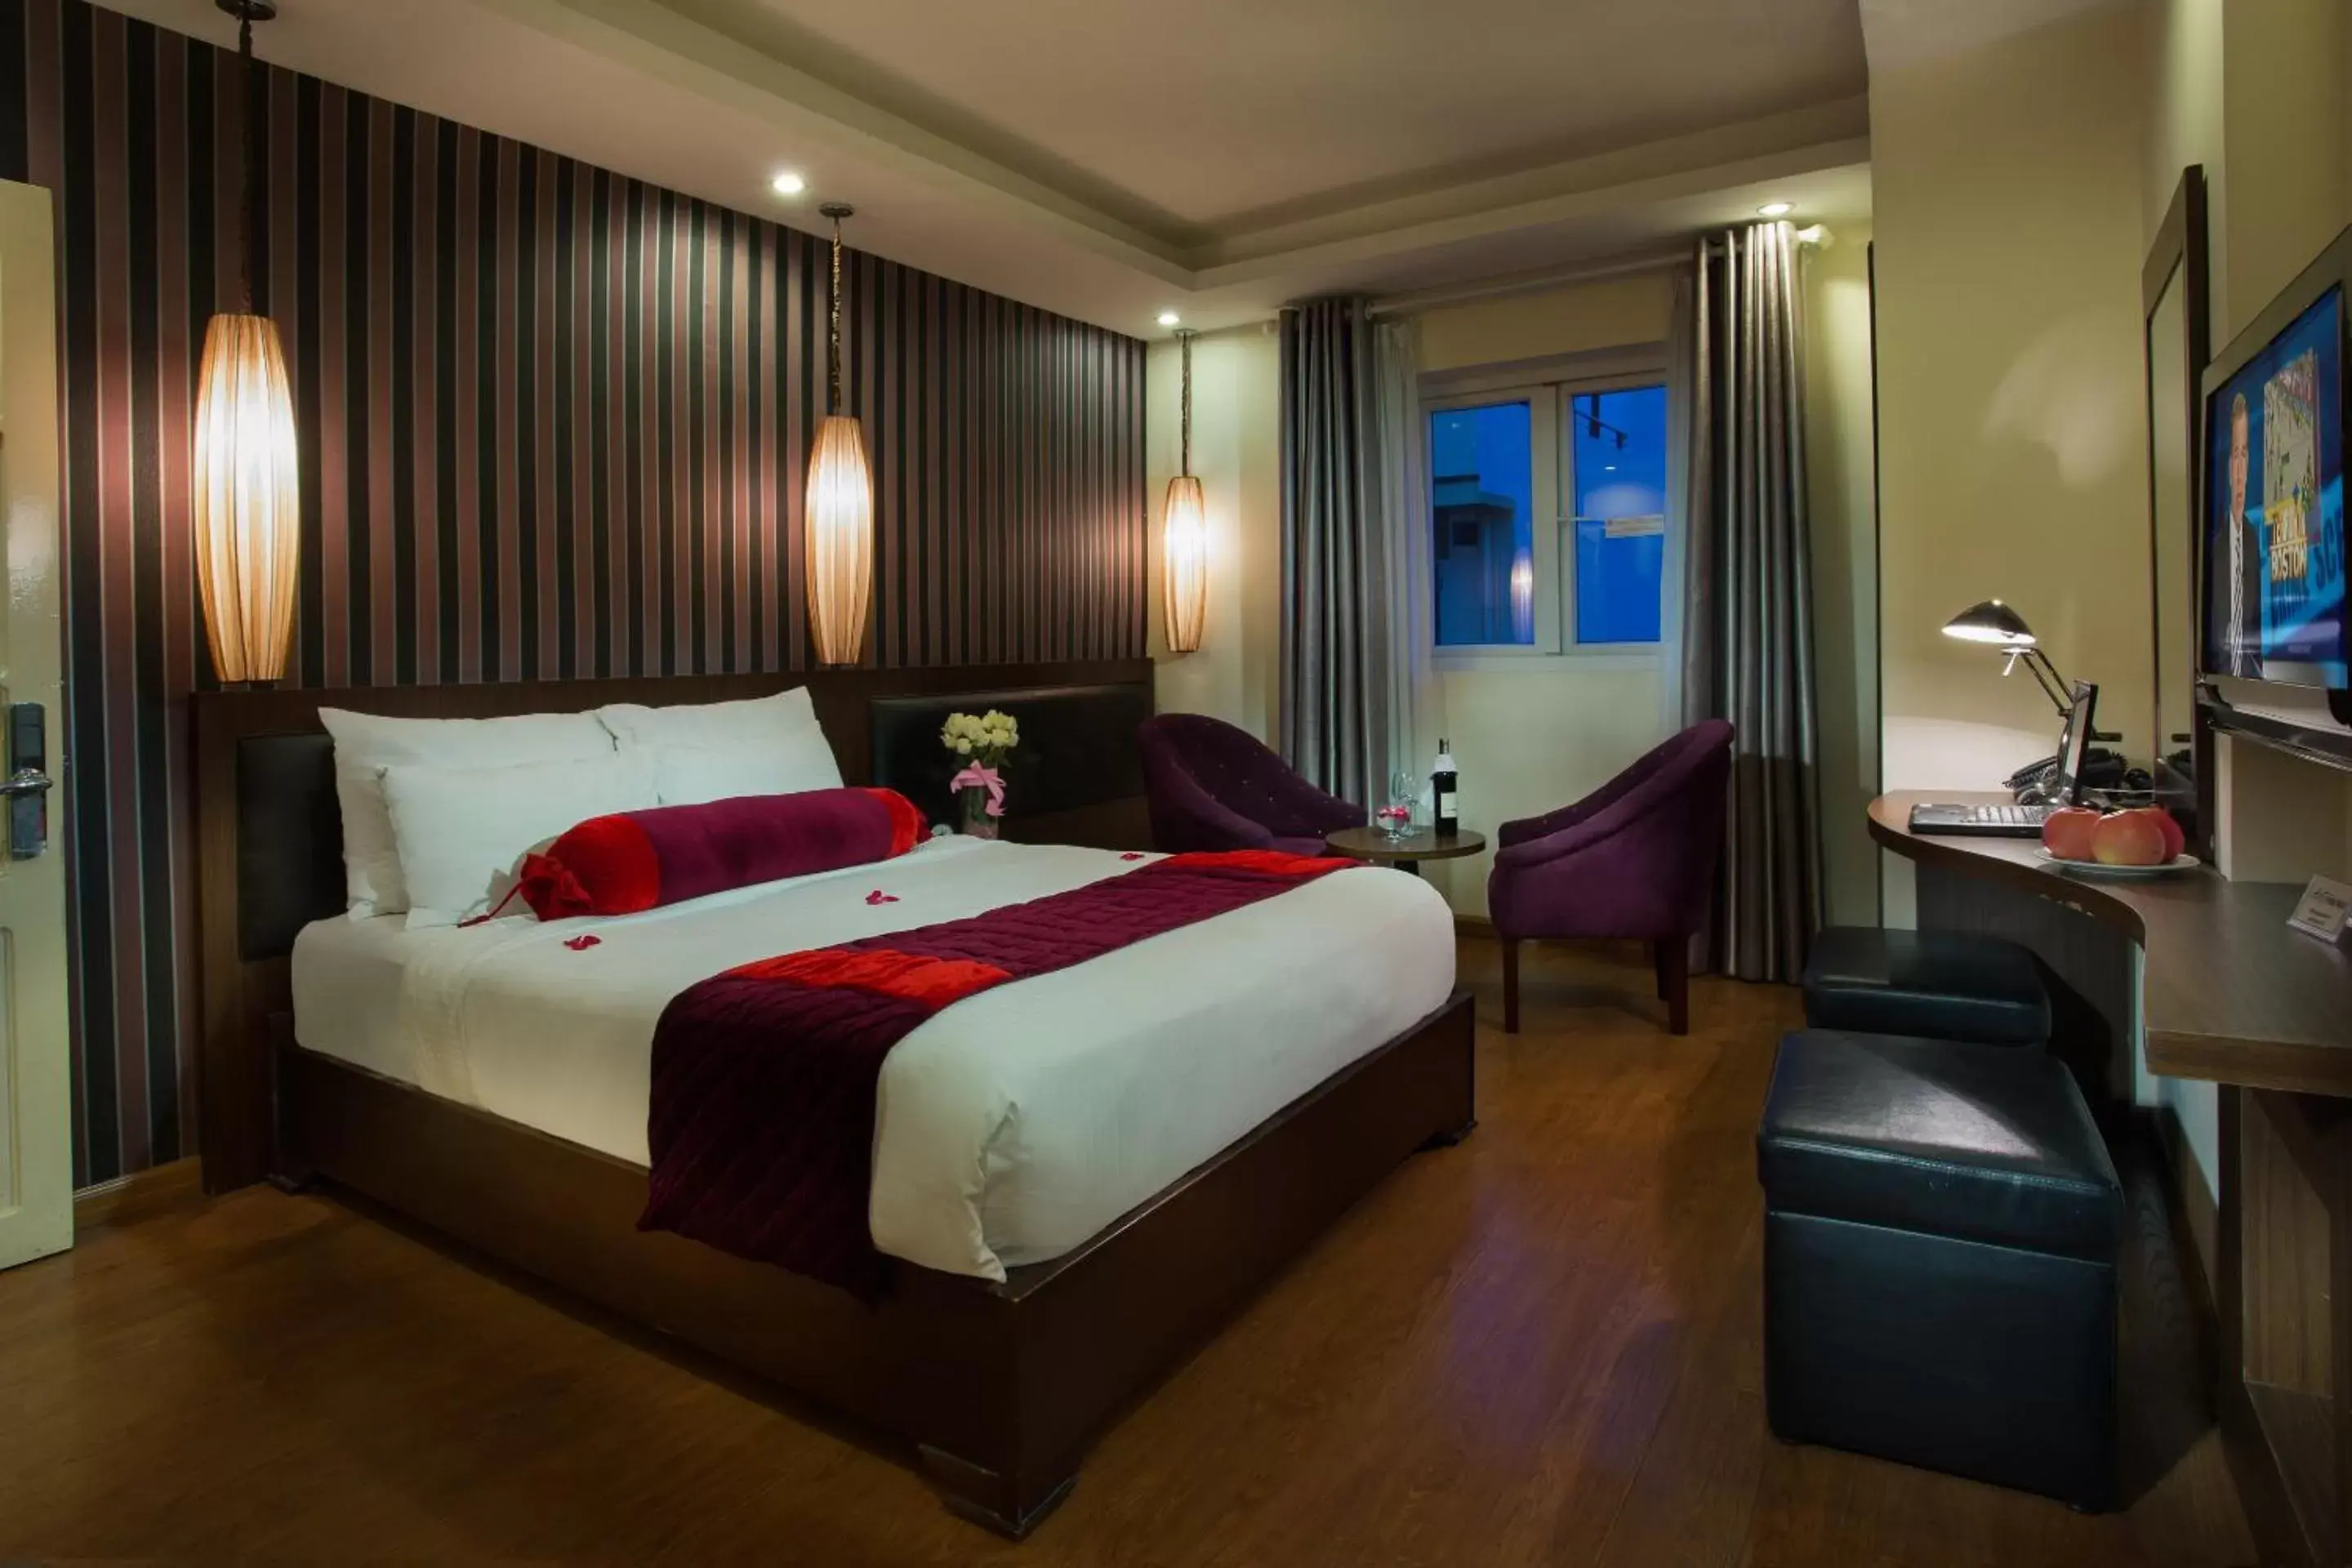 Bedroom, Room Photo in Golden Art Hotel